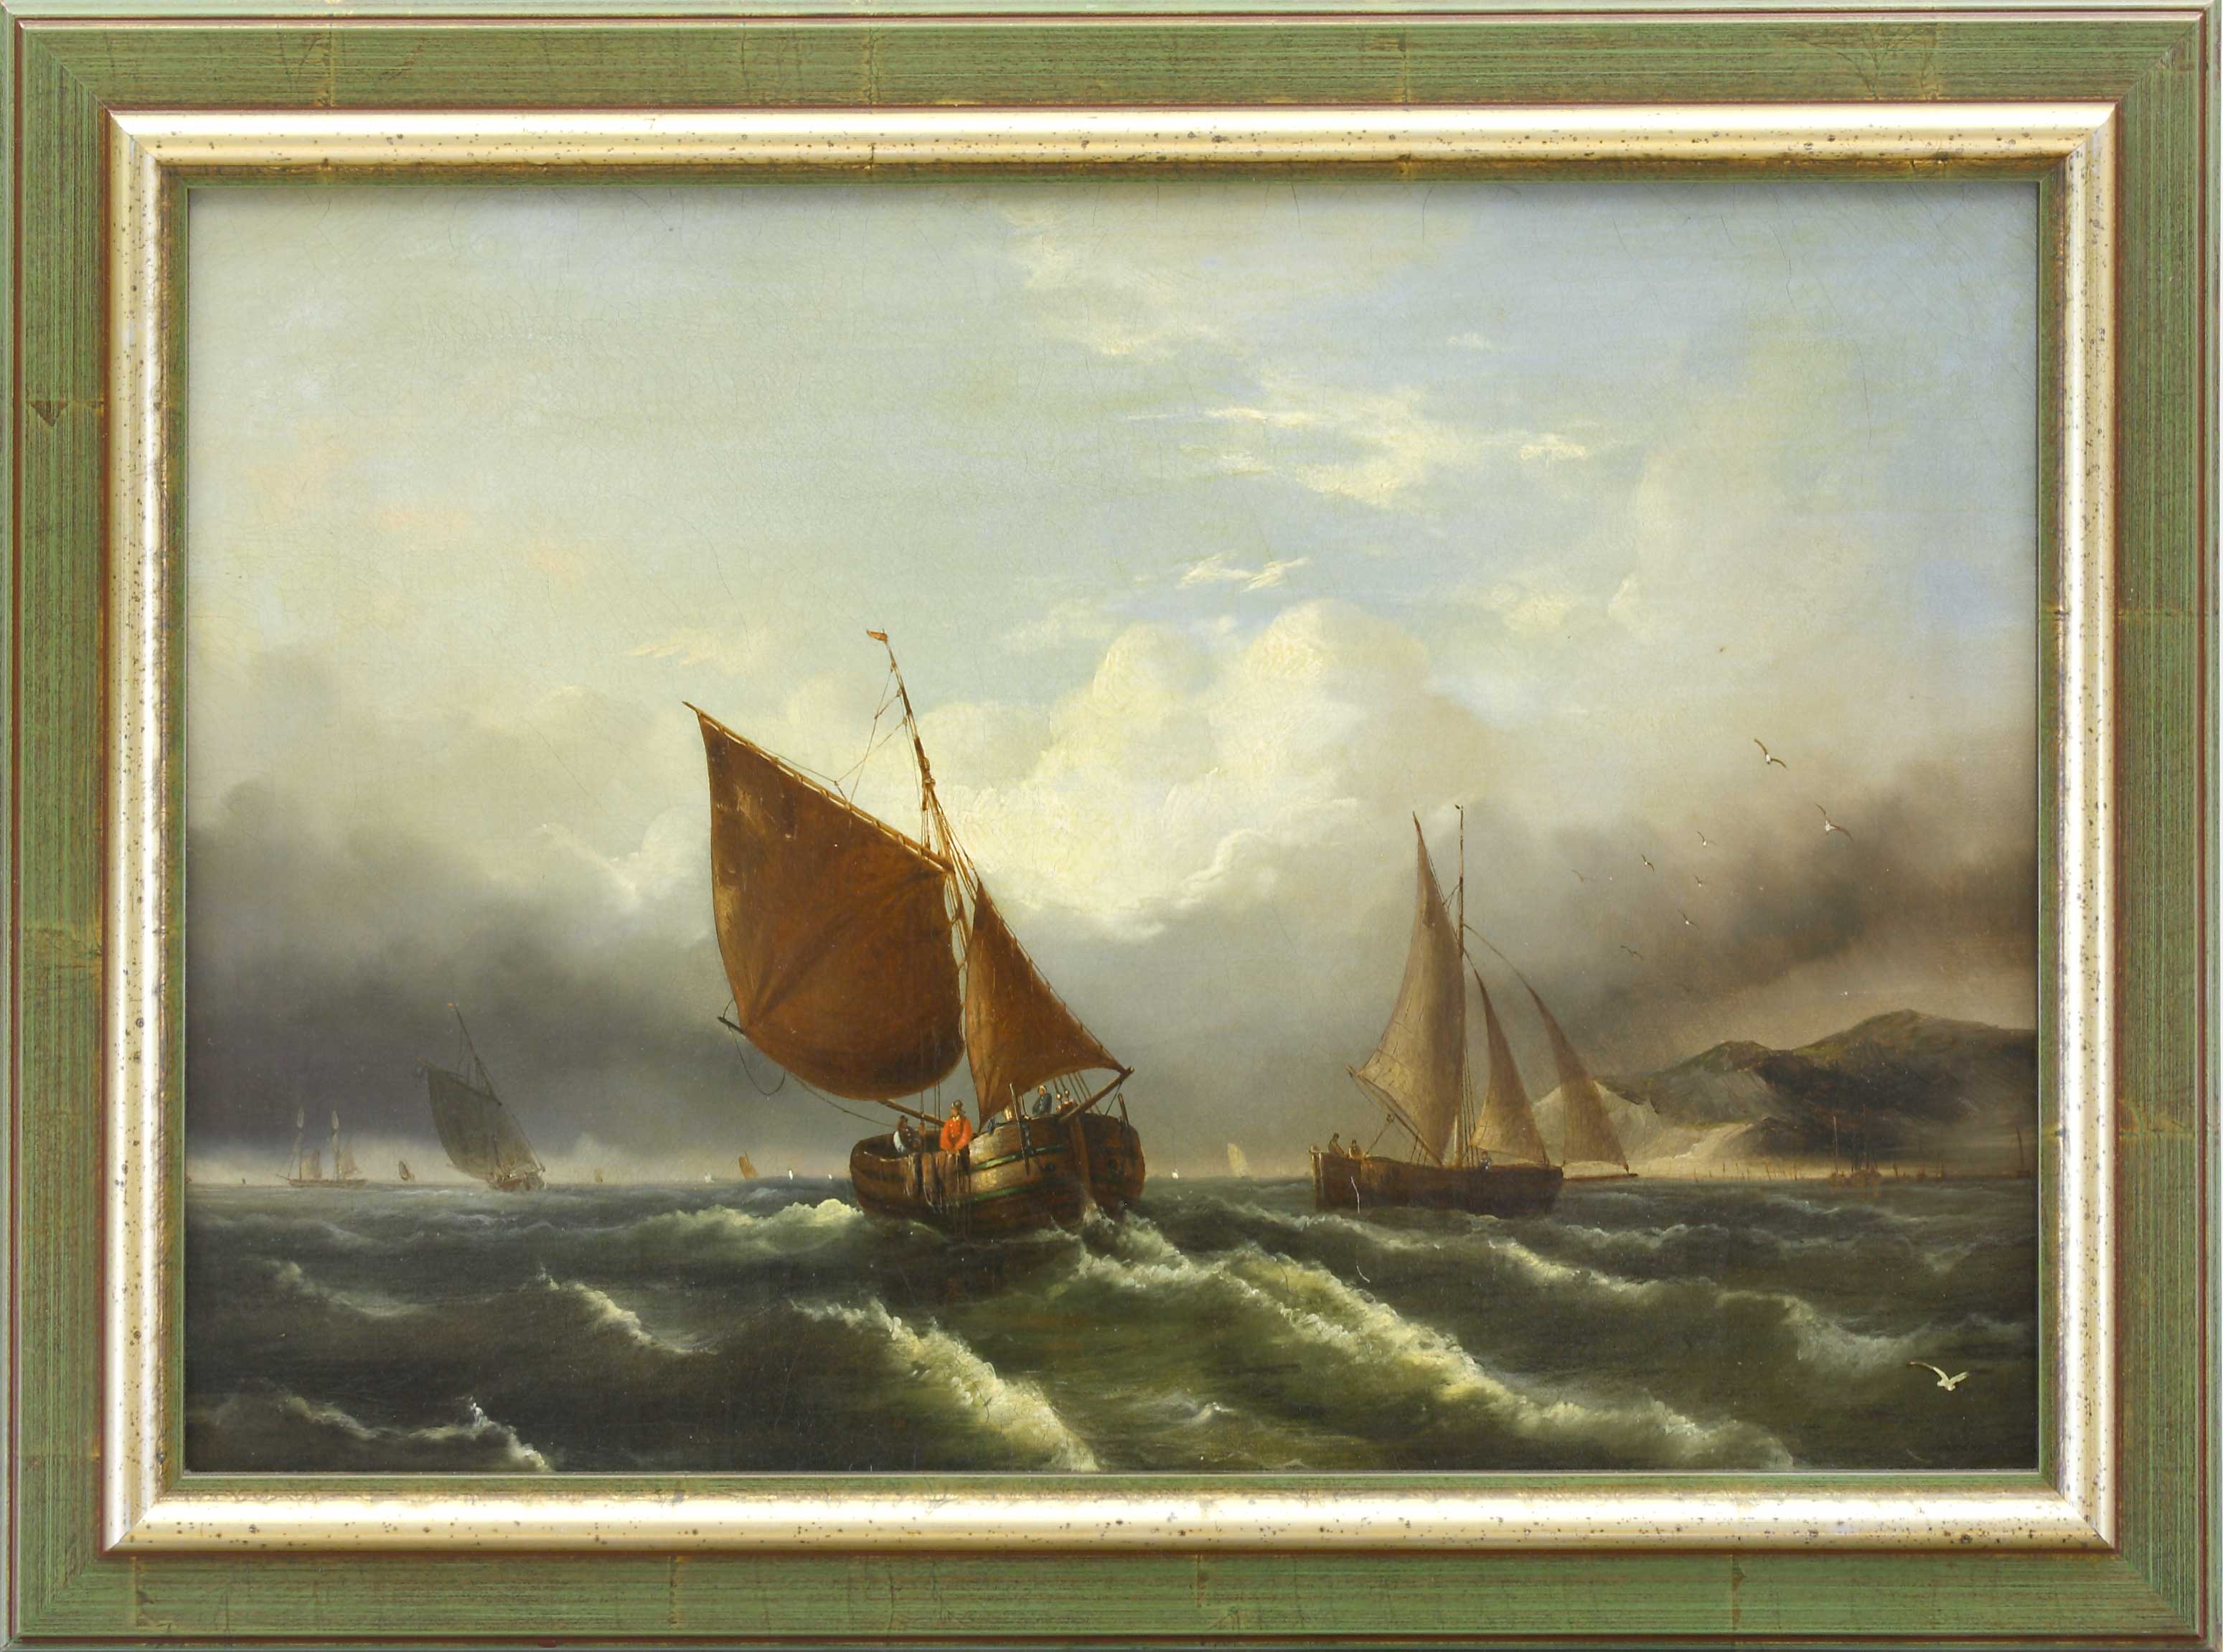 Auktionshaus Quentin Berlin  Gemälde Marinemaler des 19. Jh.  Zwei Segelboote auf bewegter See  im Hintergrund weitere